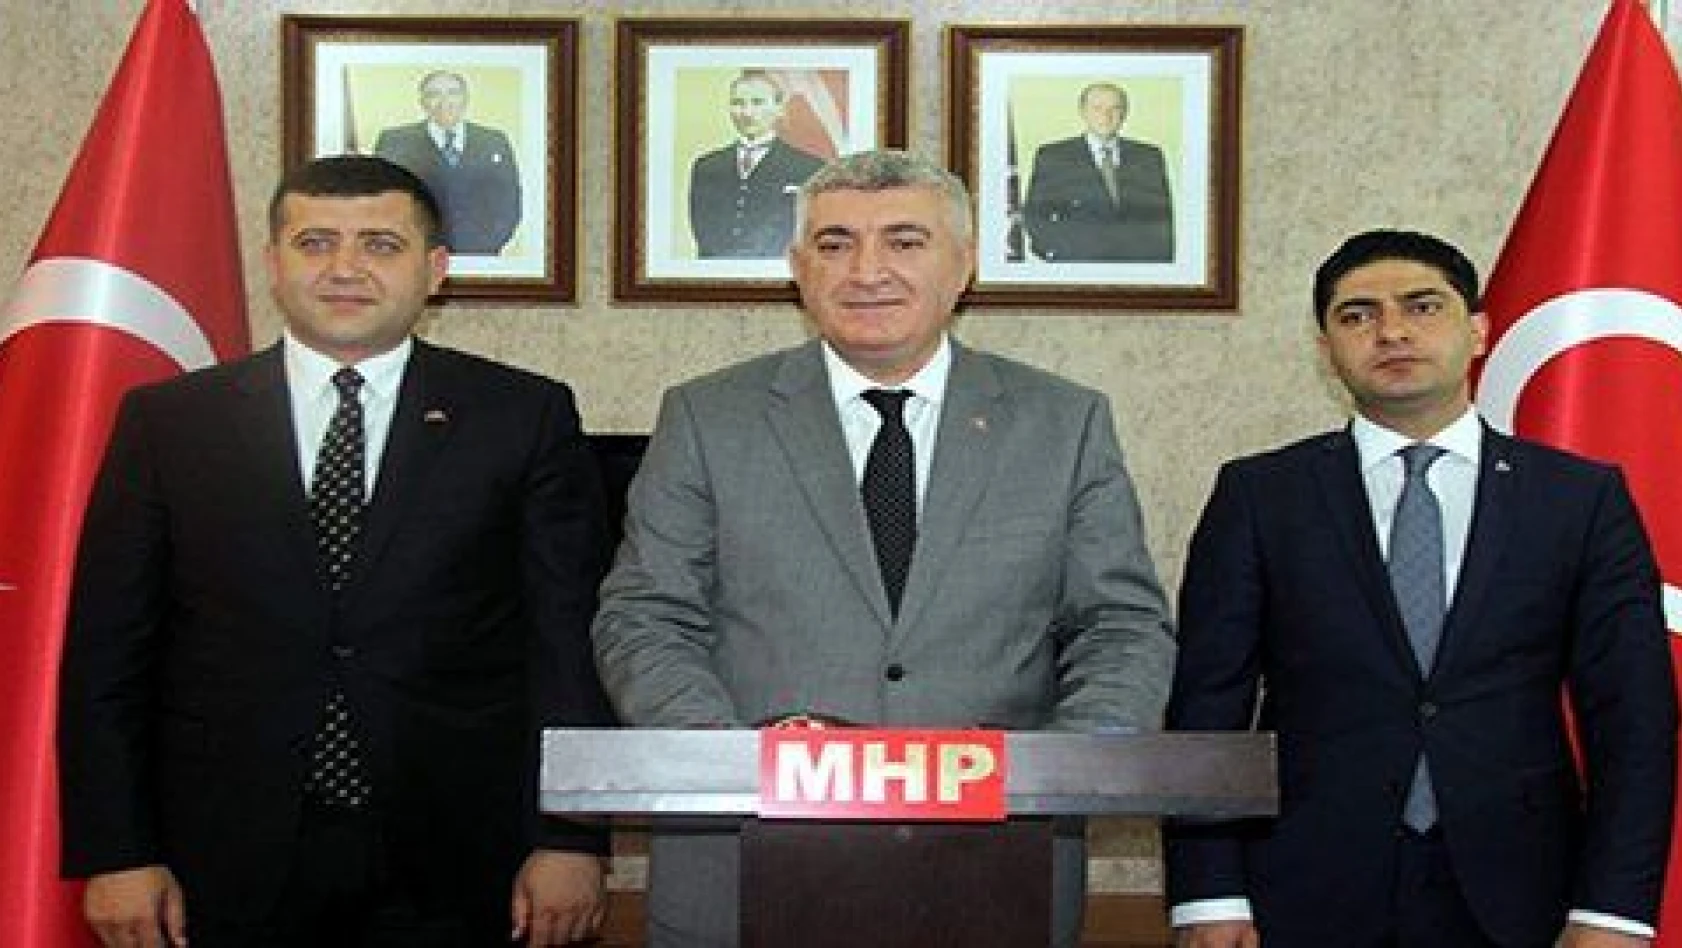 Tok: 'MHP bölündü' diyen felaket tellalları milletimizin sillesini yemiştir'